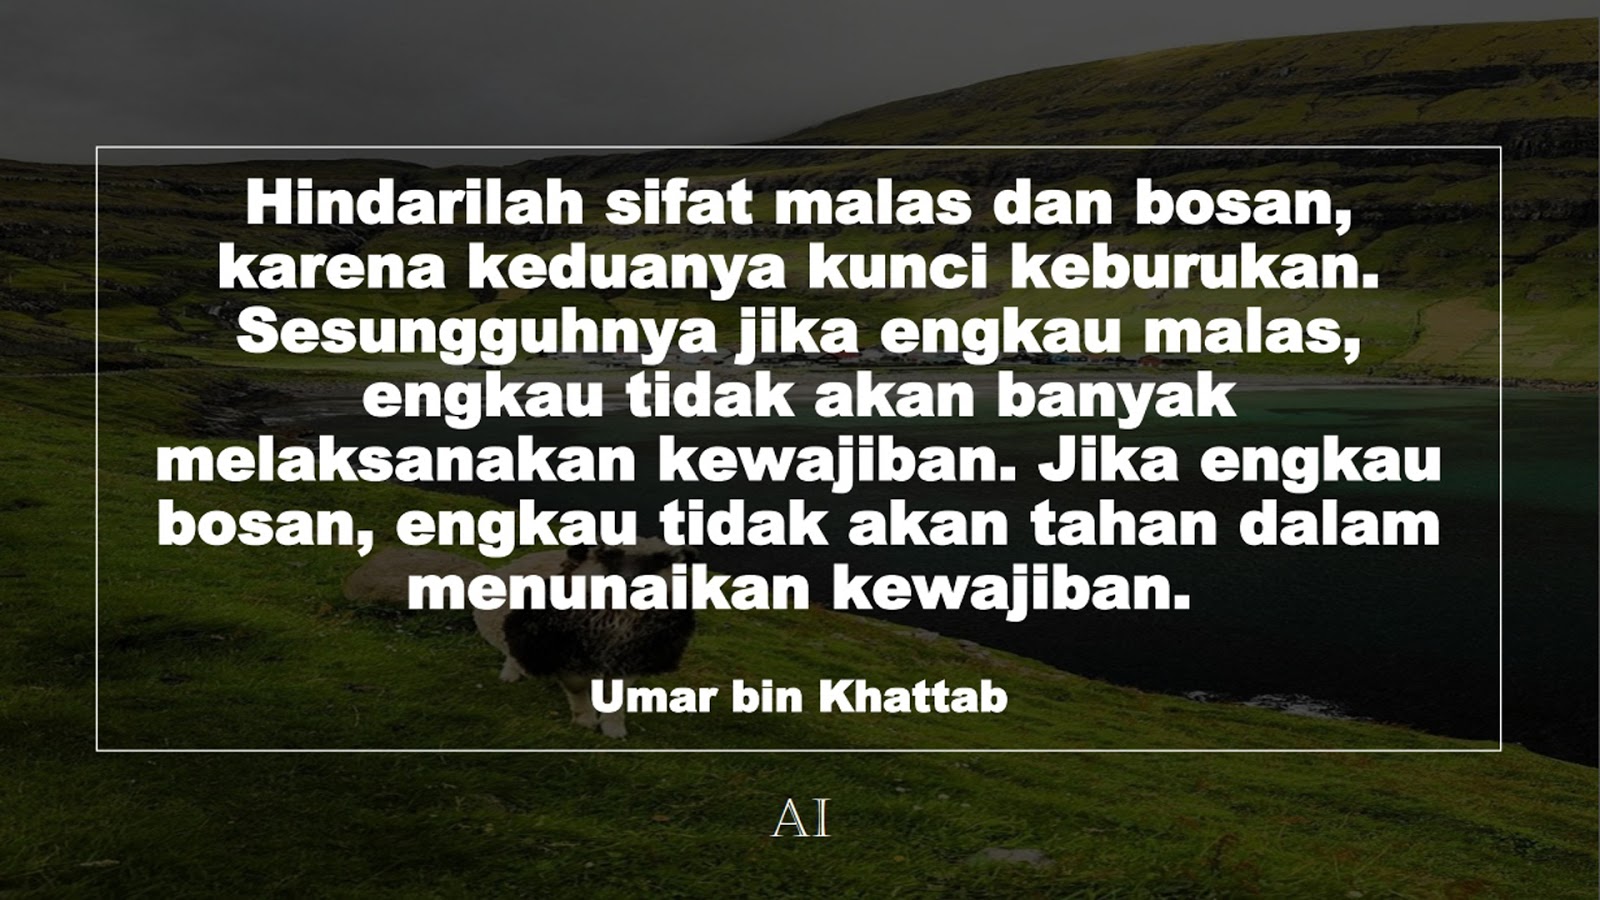 Wallpaper Kata Bijak Umar bin Khattab  (Hindarilah sifat malas dan bosan, karena keduanya kunci keburukan. Sesungguhnya jika engkau malas, engkau tidak akan banyak melaksanakan kewajiban. Jika engkau bosan, engkau tidak akan tahan dalam menunaikan kewajiban.)